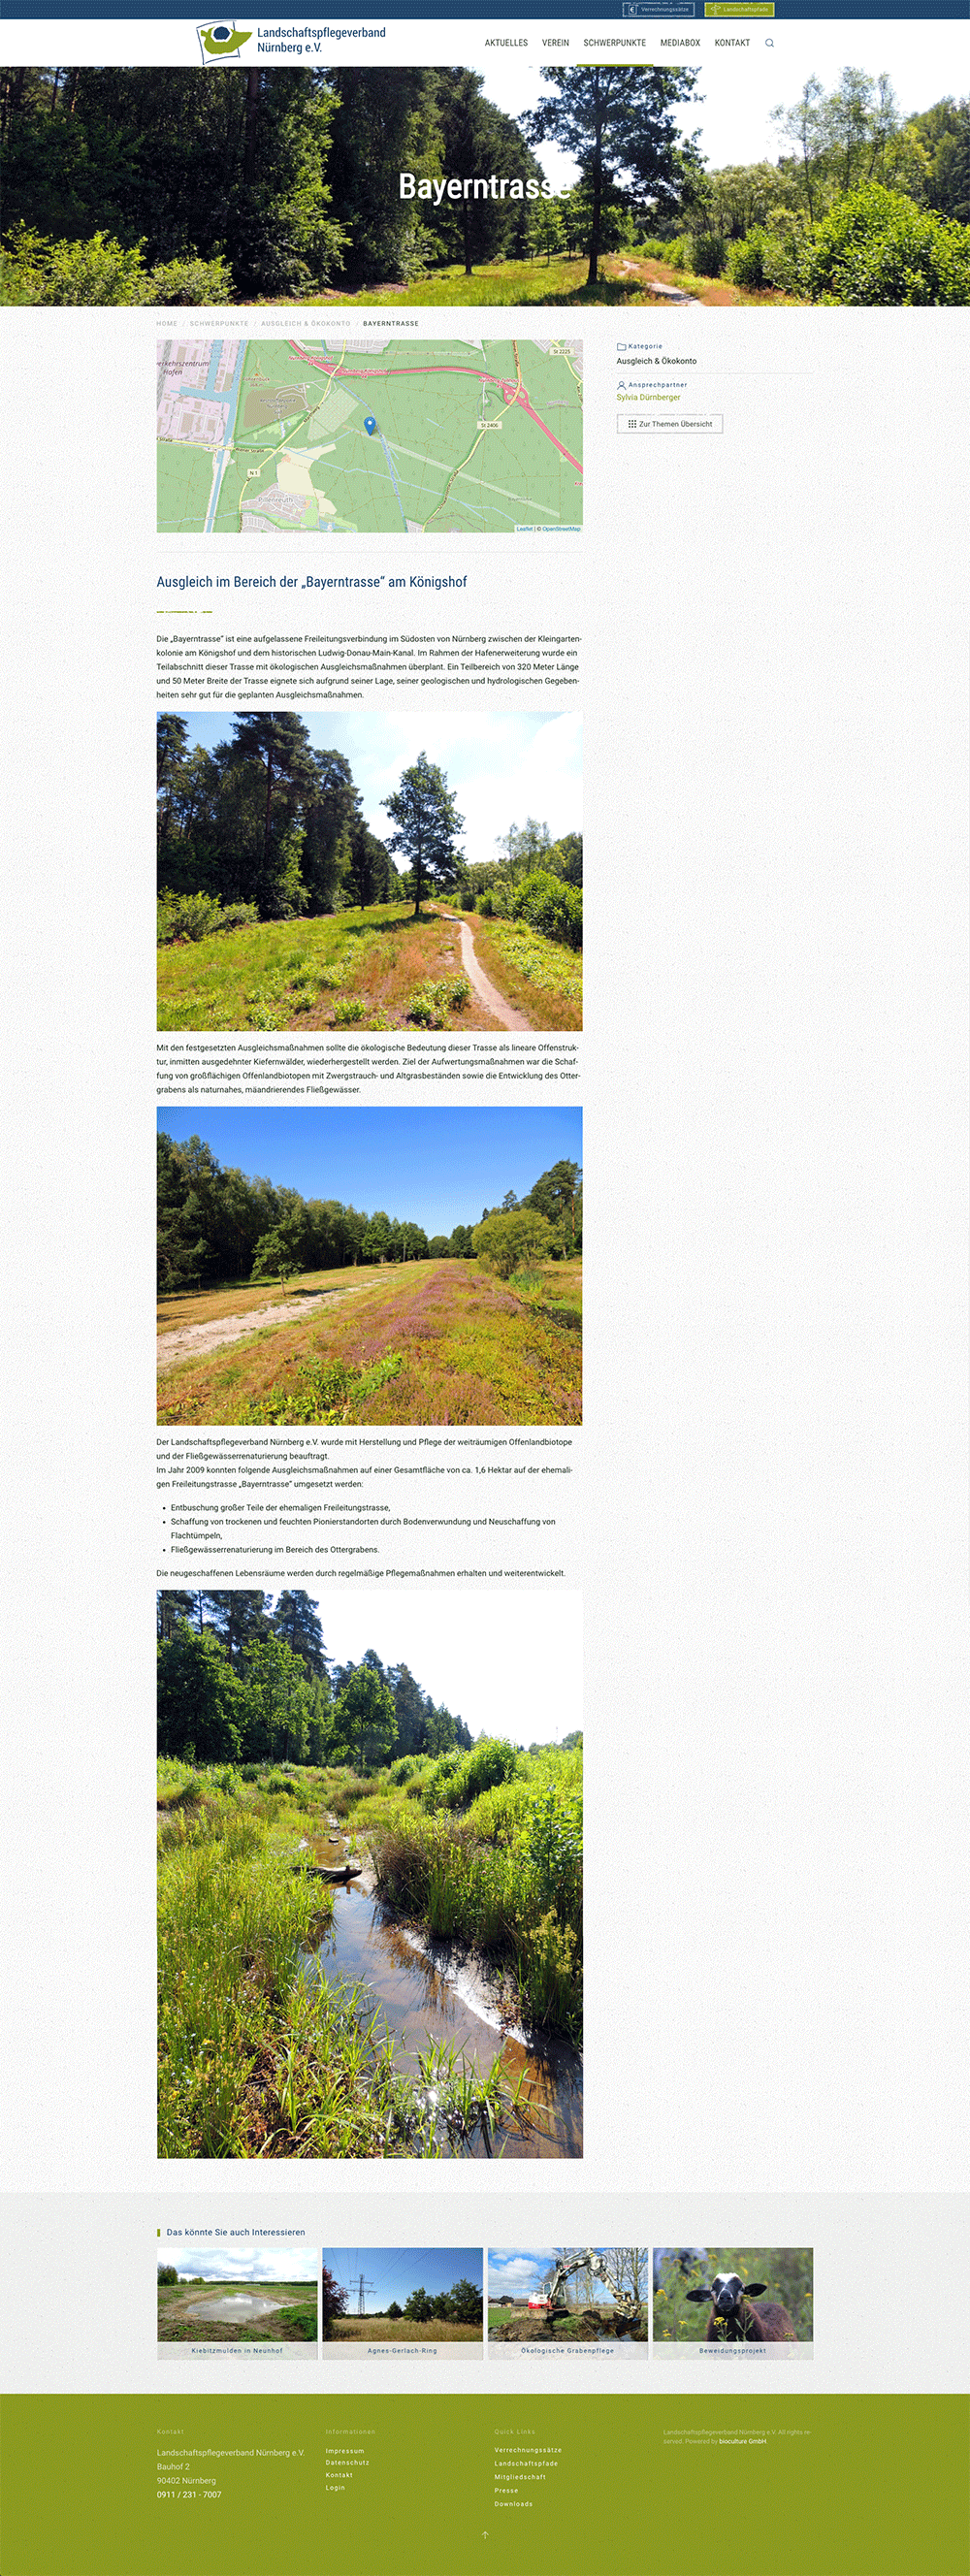 Landschaftspflege Projekt Landingpage mit Detailinformationen und Kartenansicht